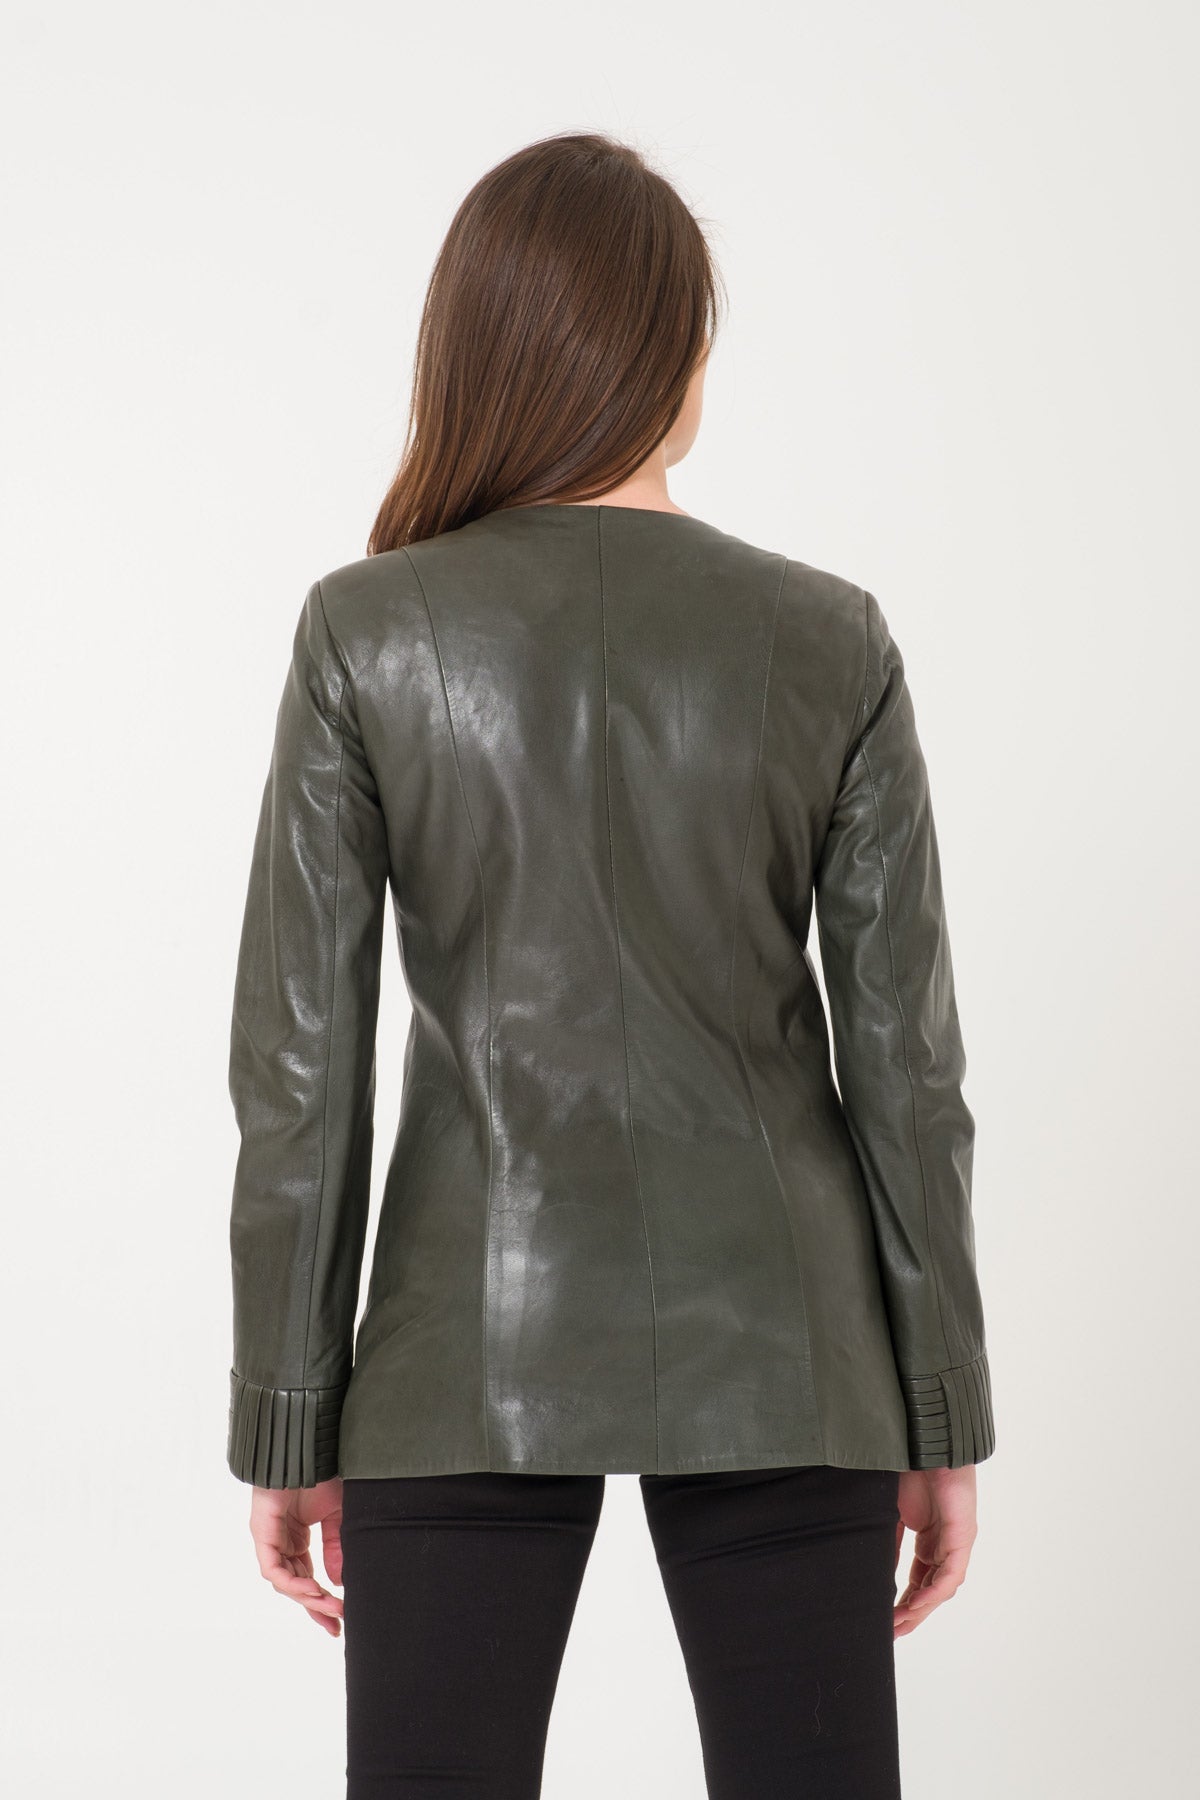 Dark Green Leather Jacket